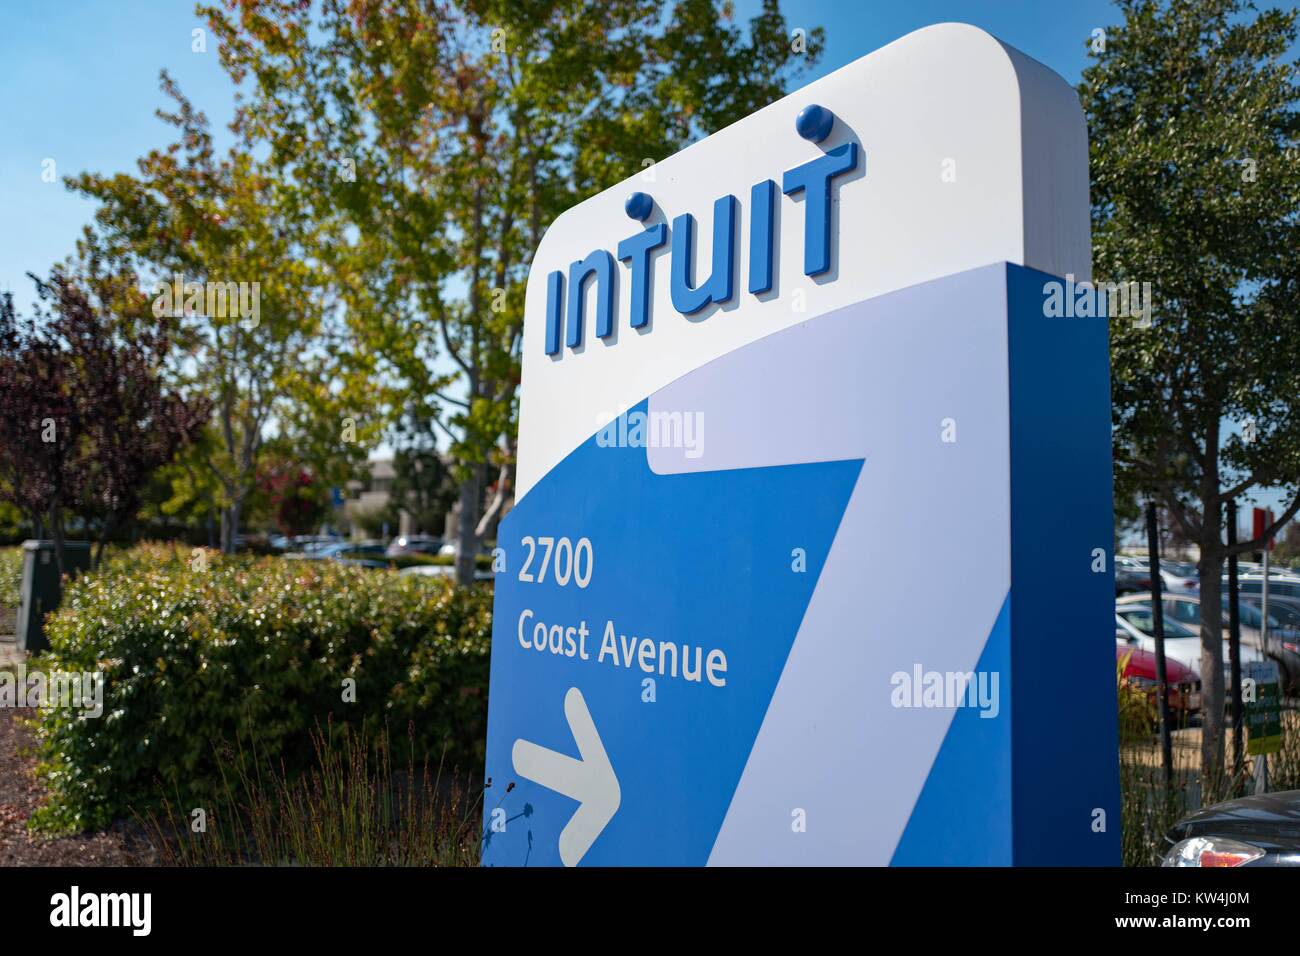 Signage für Financial Software Firma Intuit am Hauptsitz des Unternehmens in der Silicon Valley Stadt Mountain View, Kalifornien, 24. August 2016. Stockfoto